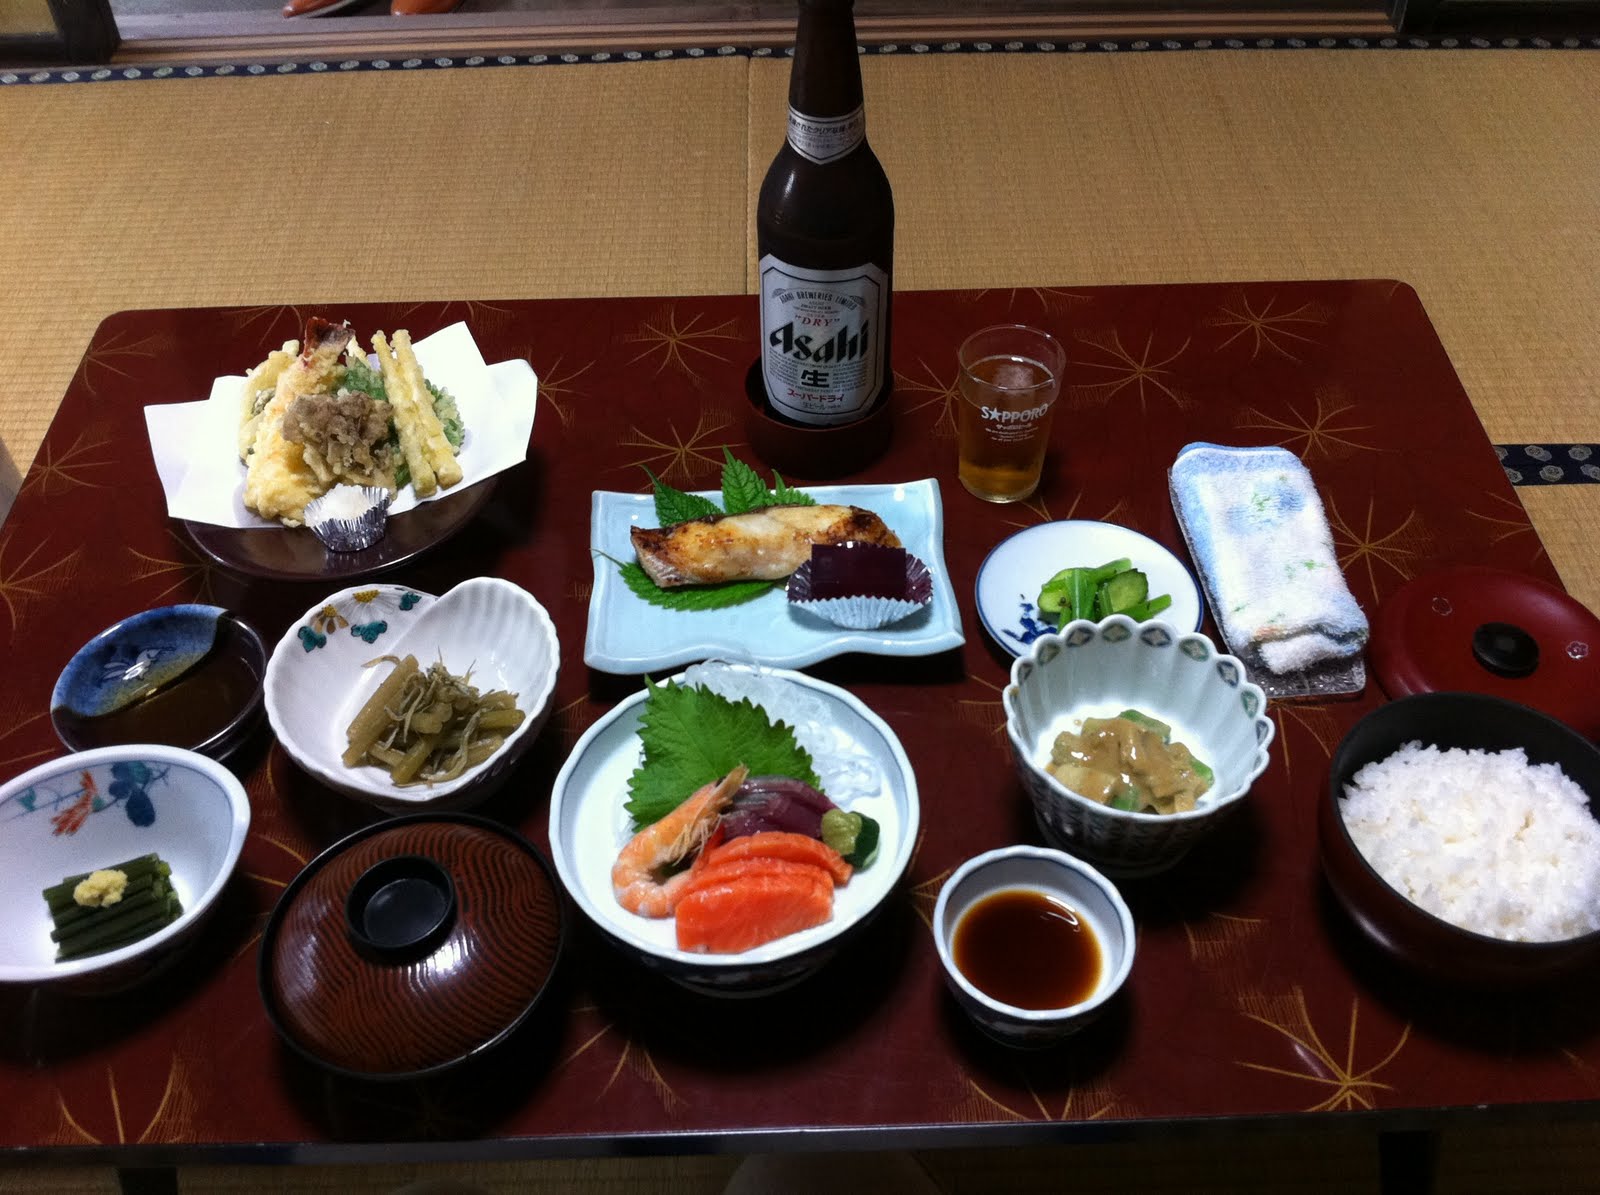 Dieta japoneza - Meniu dieta japoneza - Dieta japoneza cu orez - Stirile Kanal D